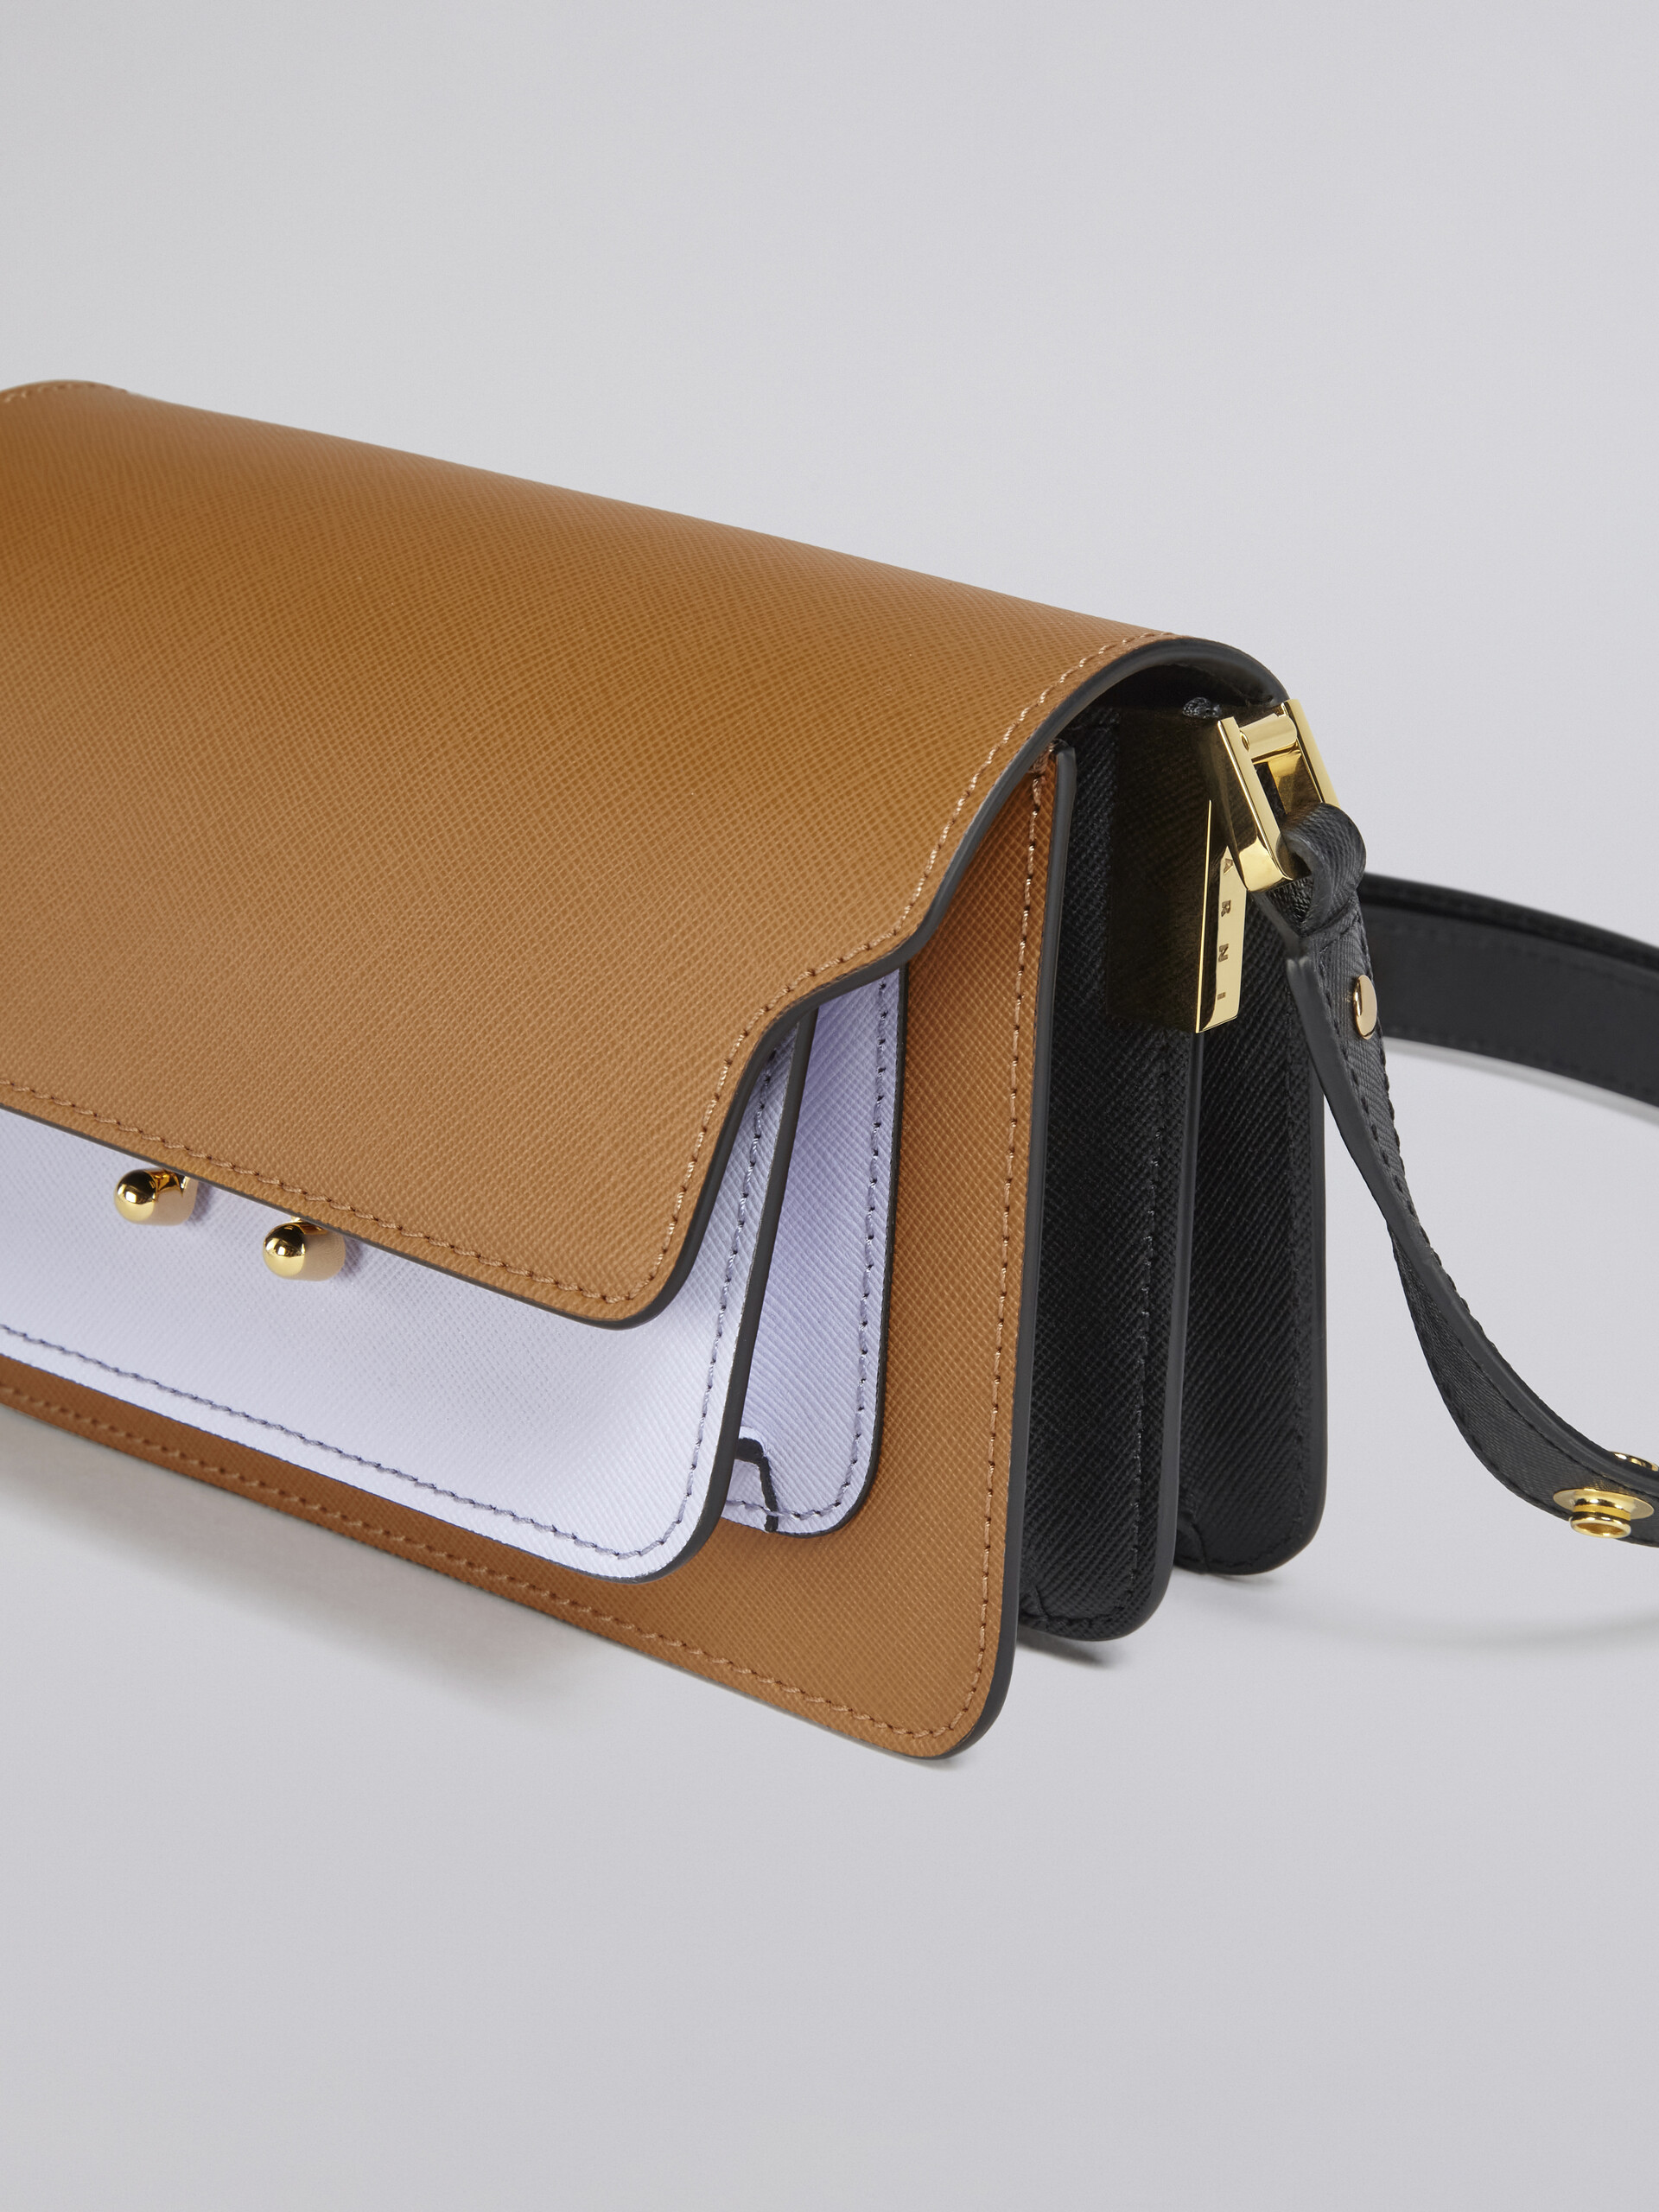 Mini sac TRUNK en cuir saffiano marron, lilas et noir - Sacs portés épaule - Image 5